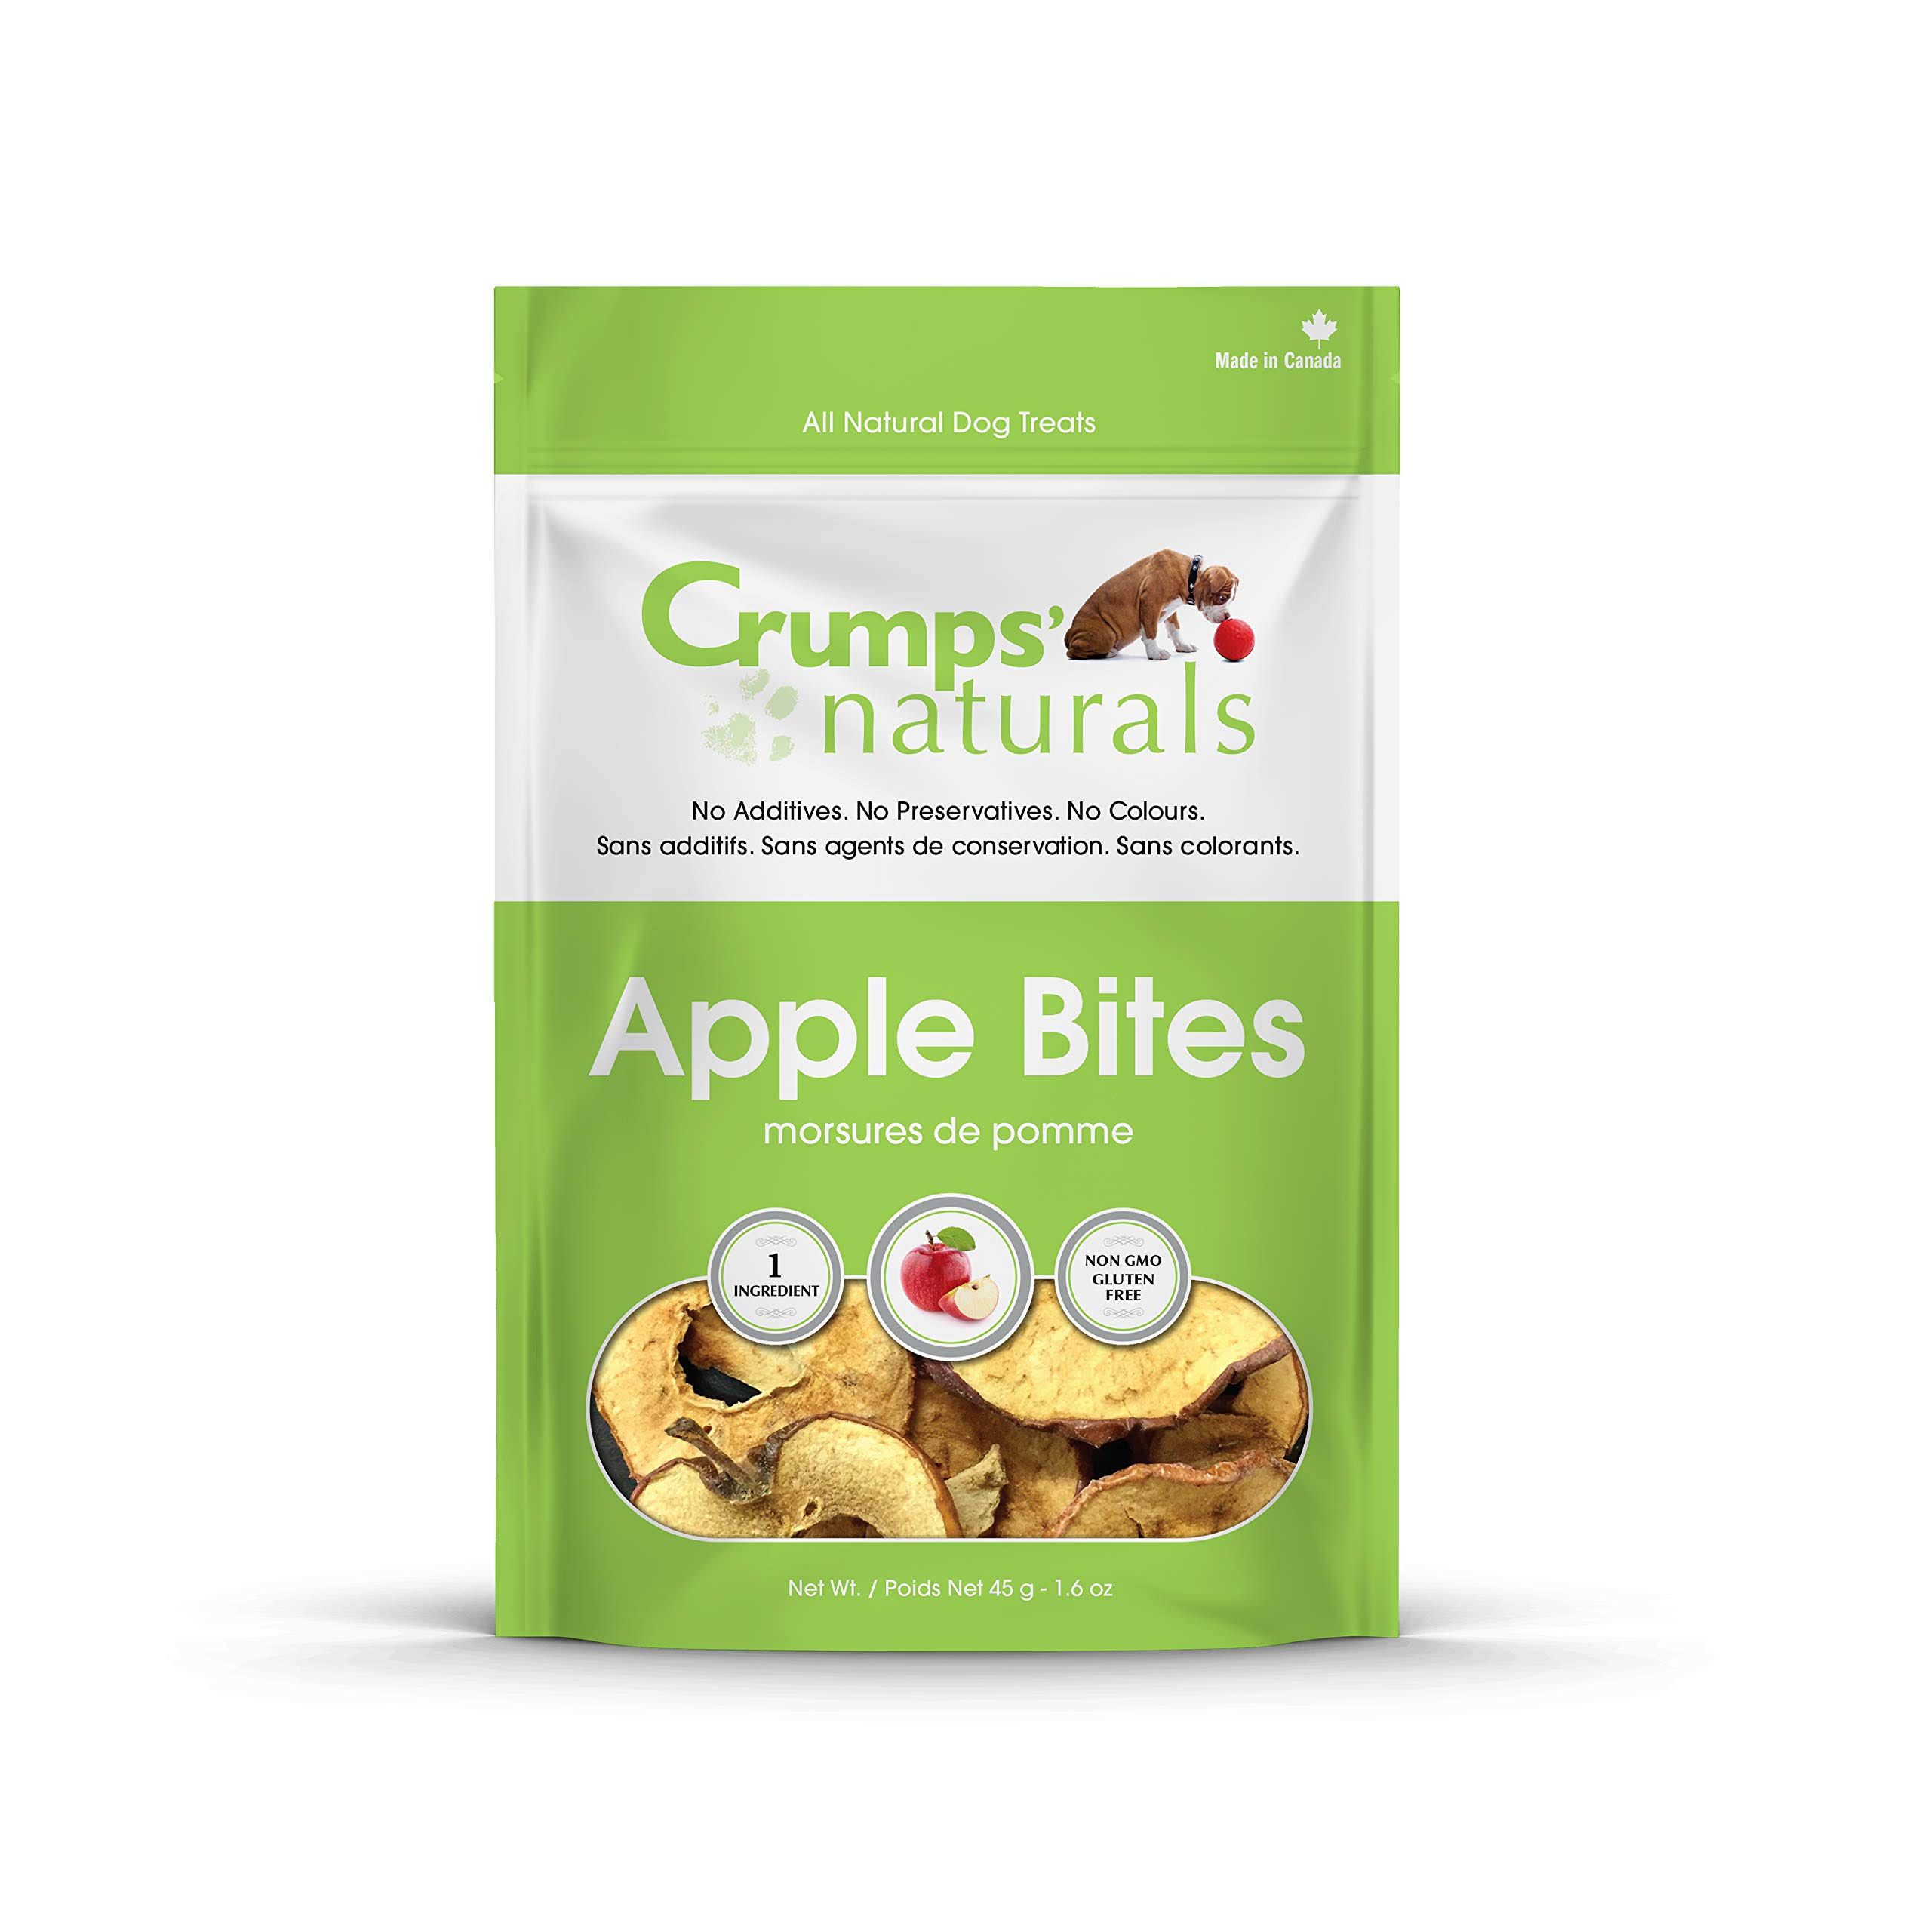 Crumps' Naturals Apple Bites Dog Treats - 1.6oz